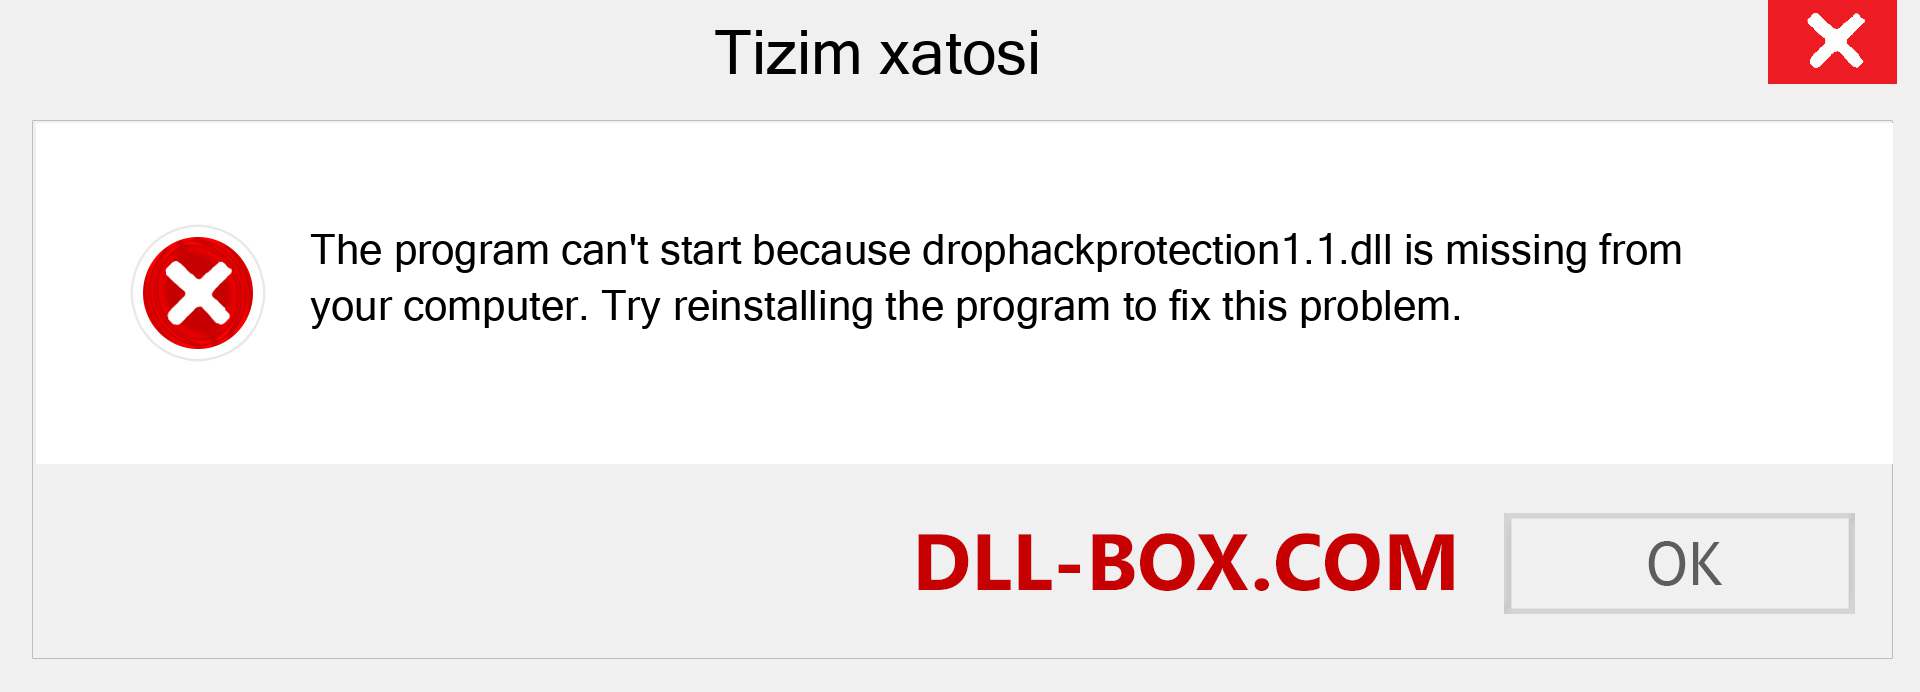 drophackprotection1.1.dll fayli yo'qolganmi?. Windows 7, 8, 10 uchun yuklab olish - Windowsda drophackprotection1.1 dll etishmayotgan xatoni tuzating, rasmlar, rasmlar